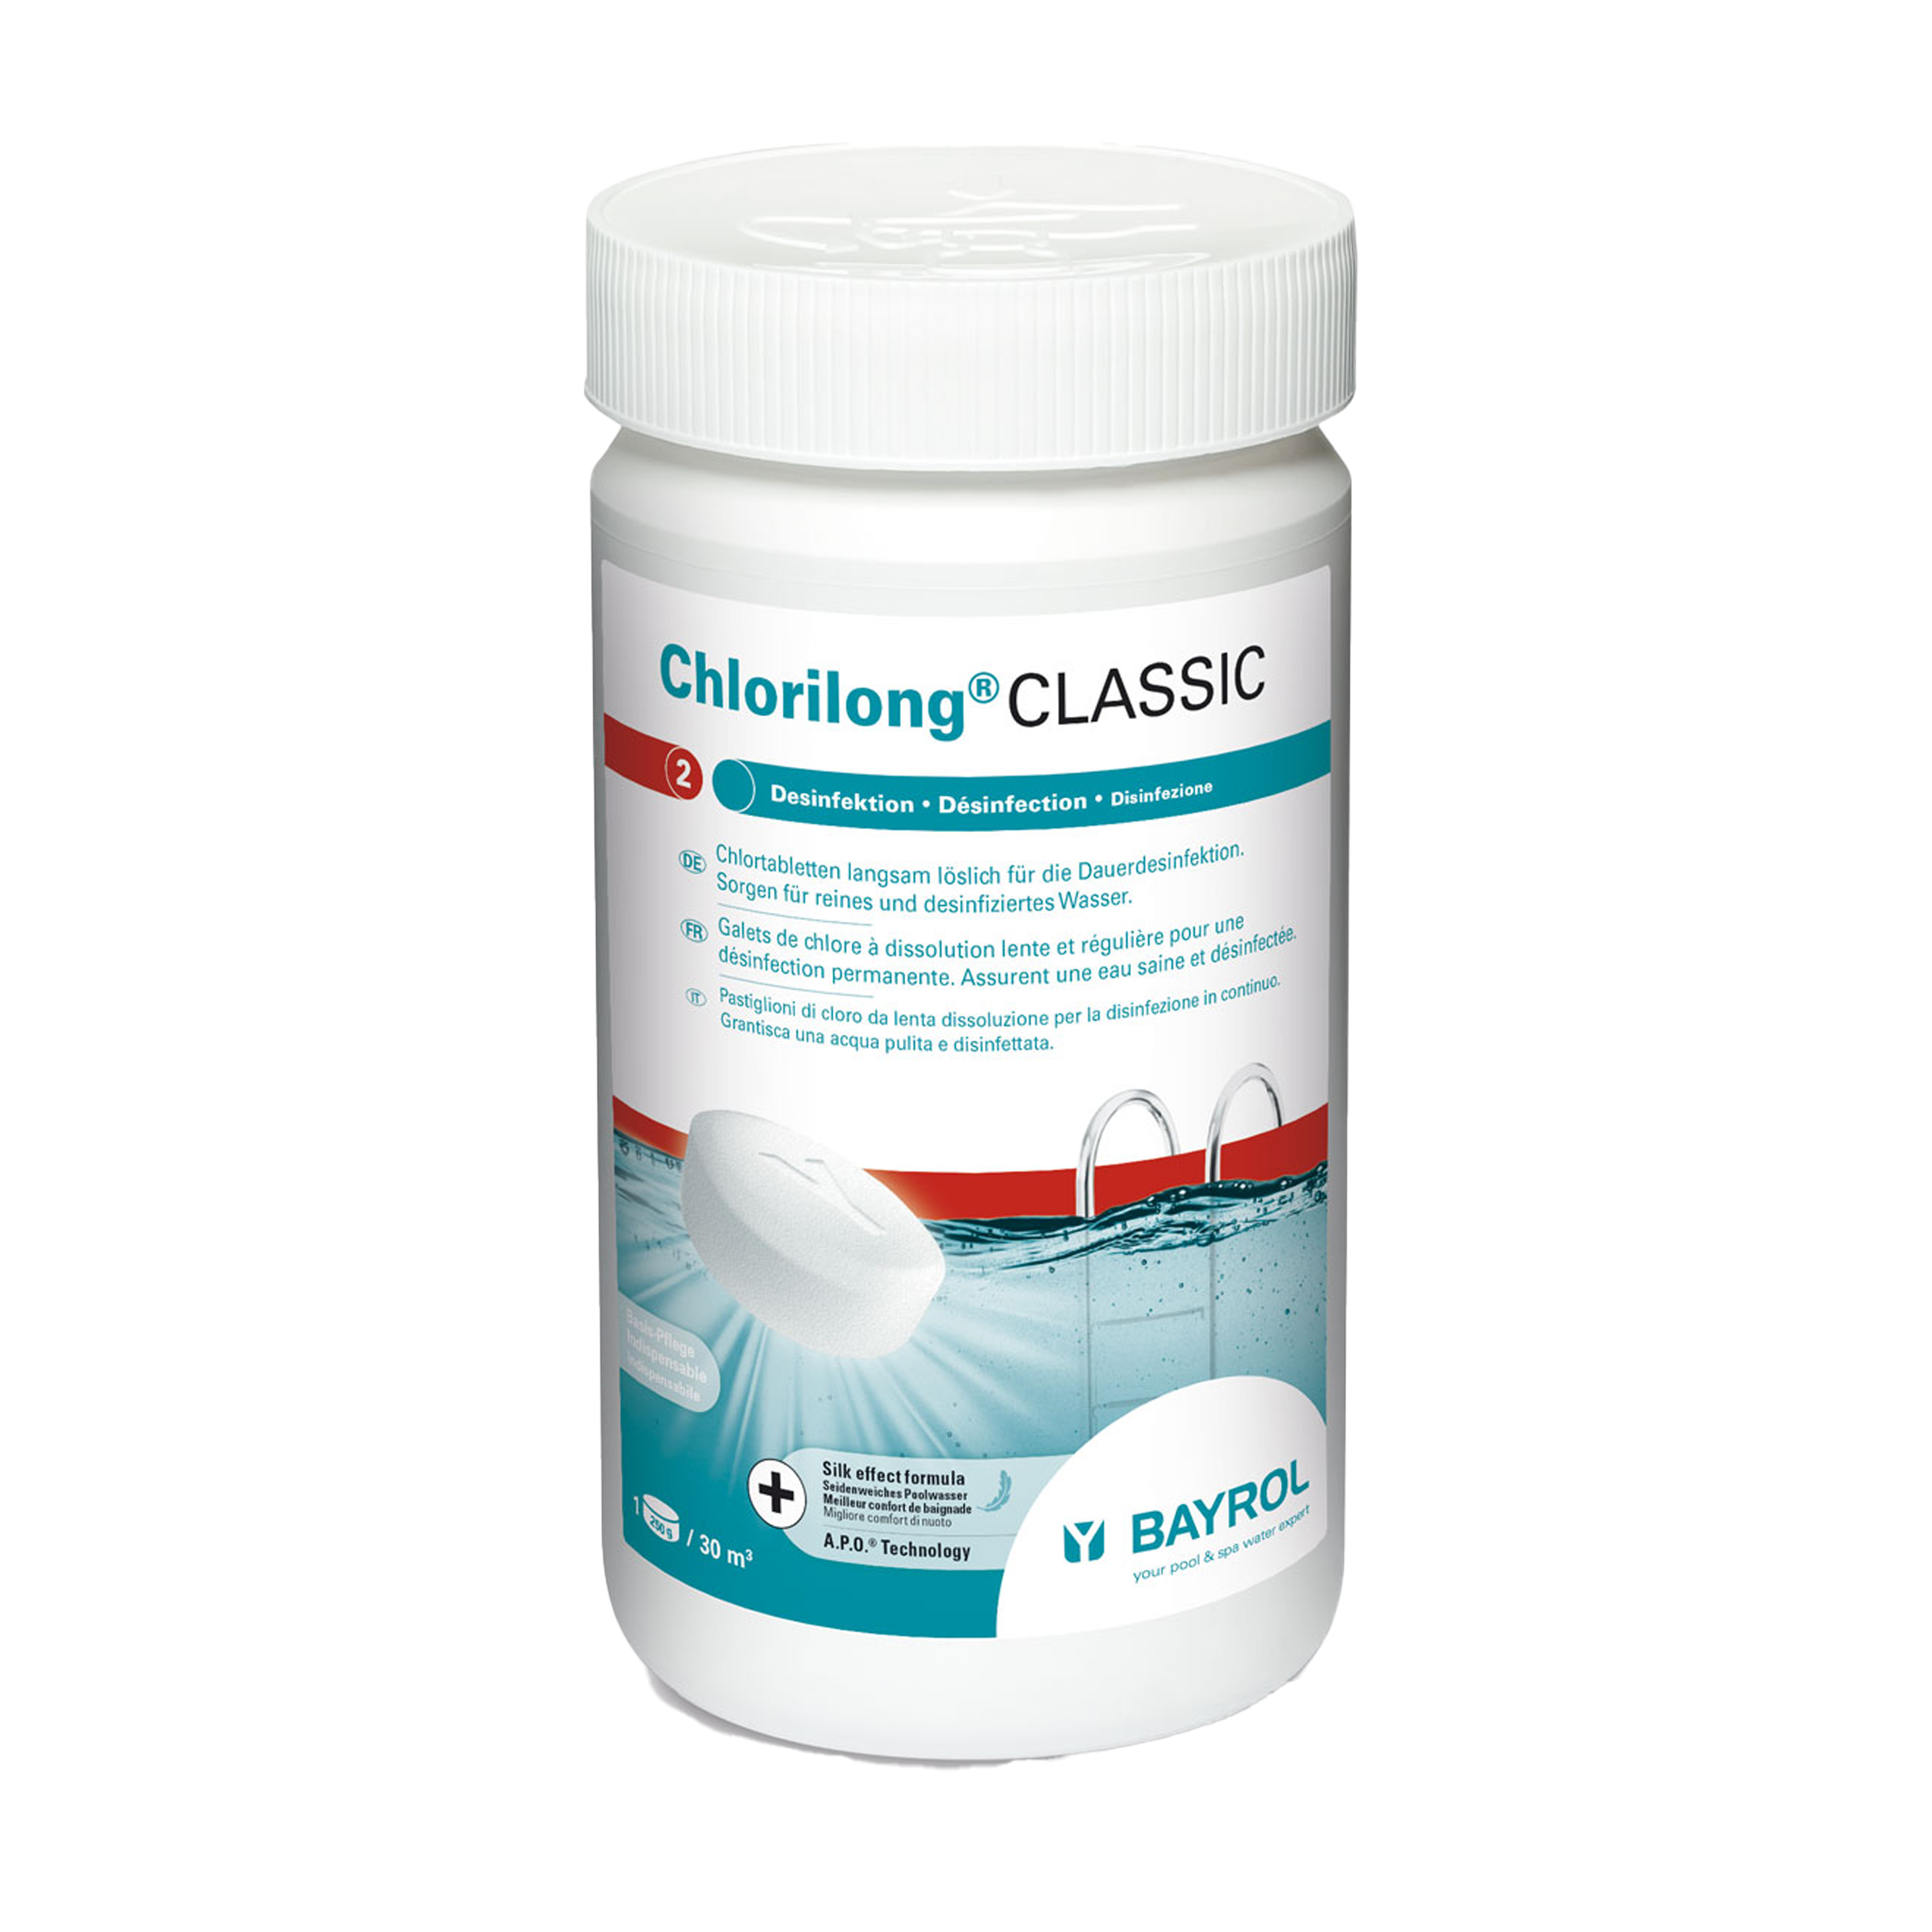 BAYROL Chlorilong Classic 1,25kg